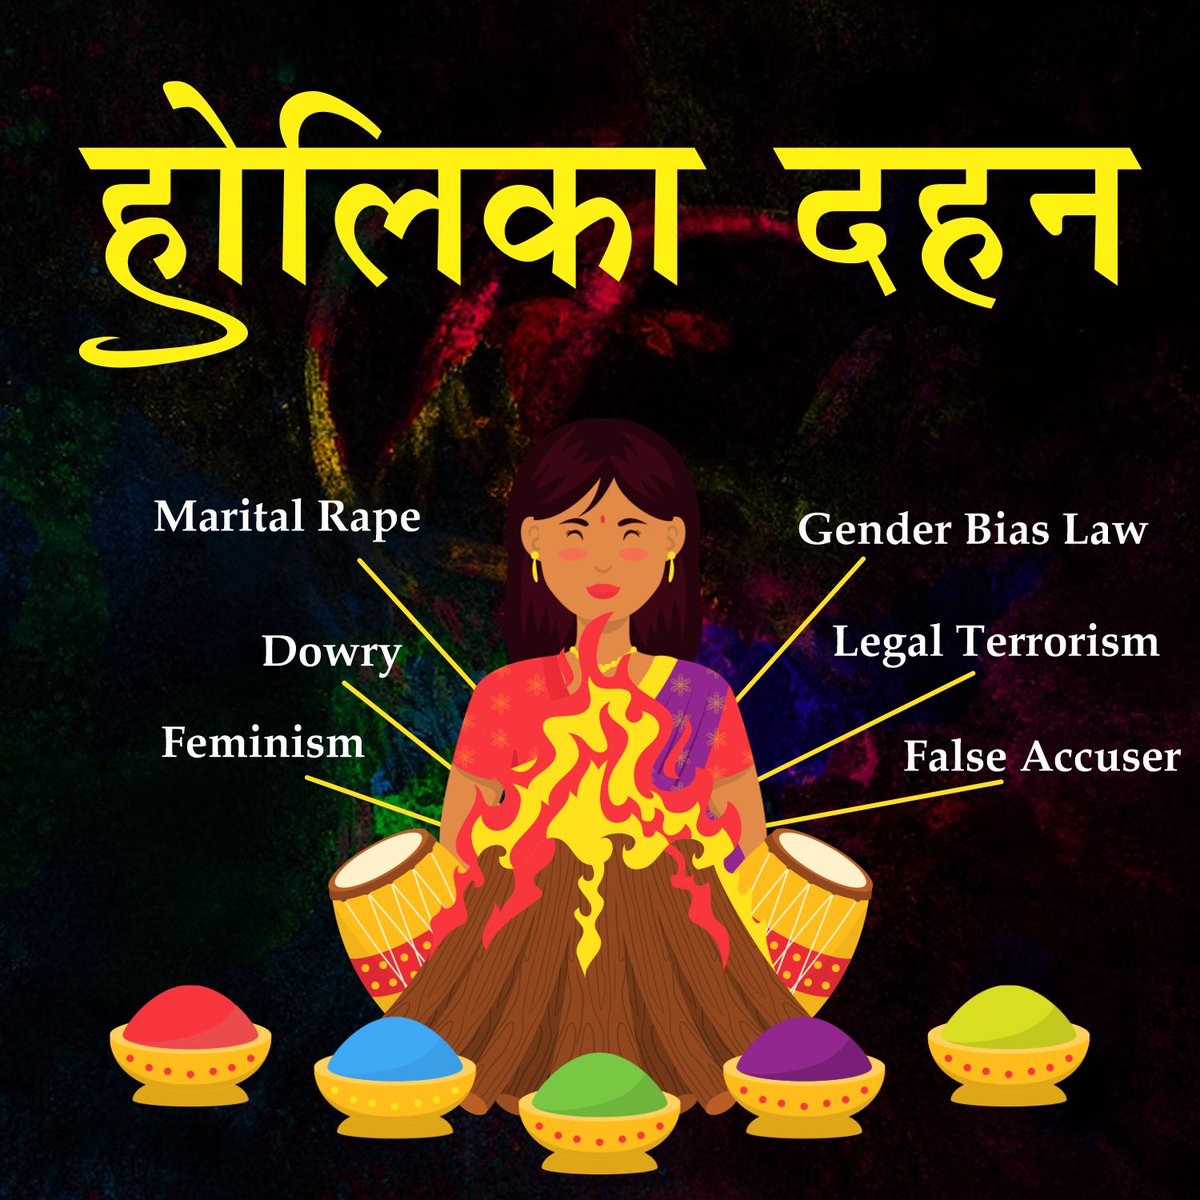 आज ऐसी सभी महिलाओं को जला देना है जो पुरुषों पर झूठे आरोप लगाकर पुरुषों का शोषण करती है...
#HolikaDehan #HD #498A #FalseMaintenanceCases #MaritalRape #Dowry #Feminism #GenderBiasLaw #LegalTerrorism #FalseAccuser